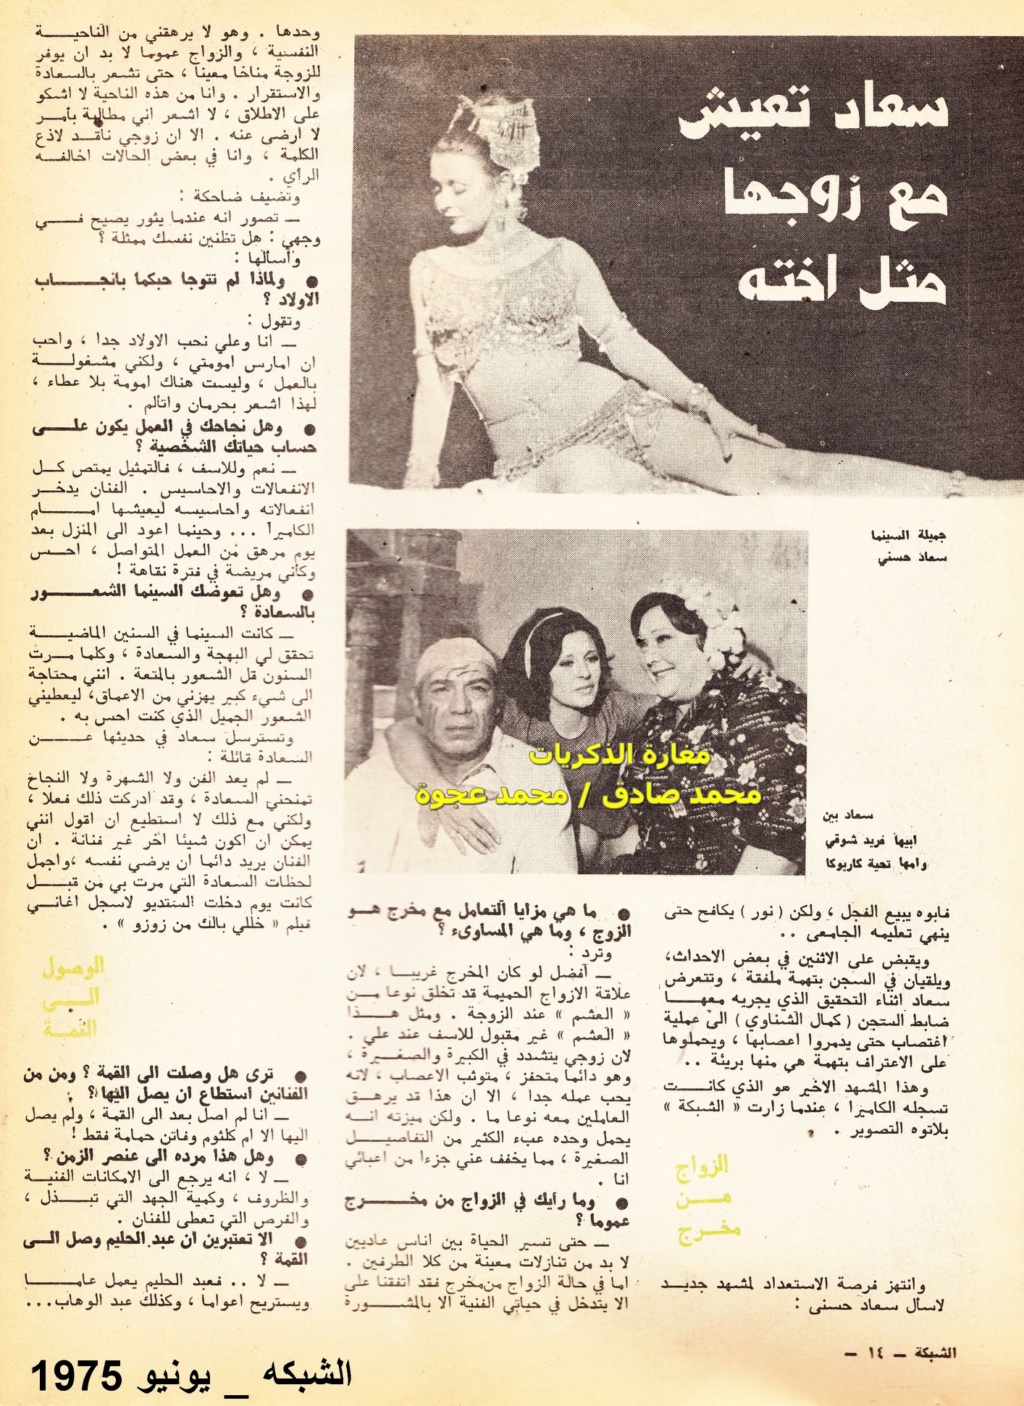 1975 - حوار صحفي : اغتصاب سعاد حسني امام زوجها 1975 م 3250